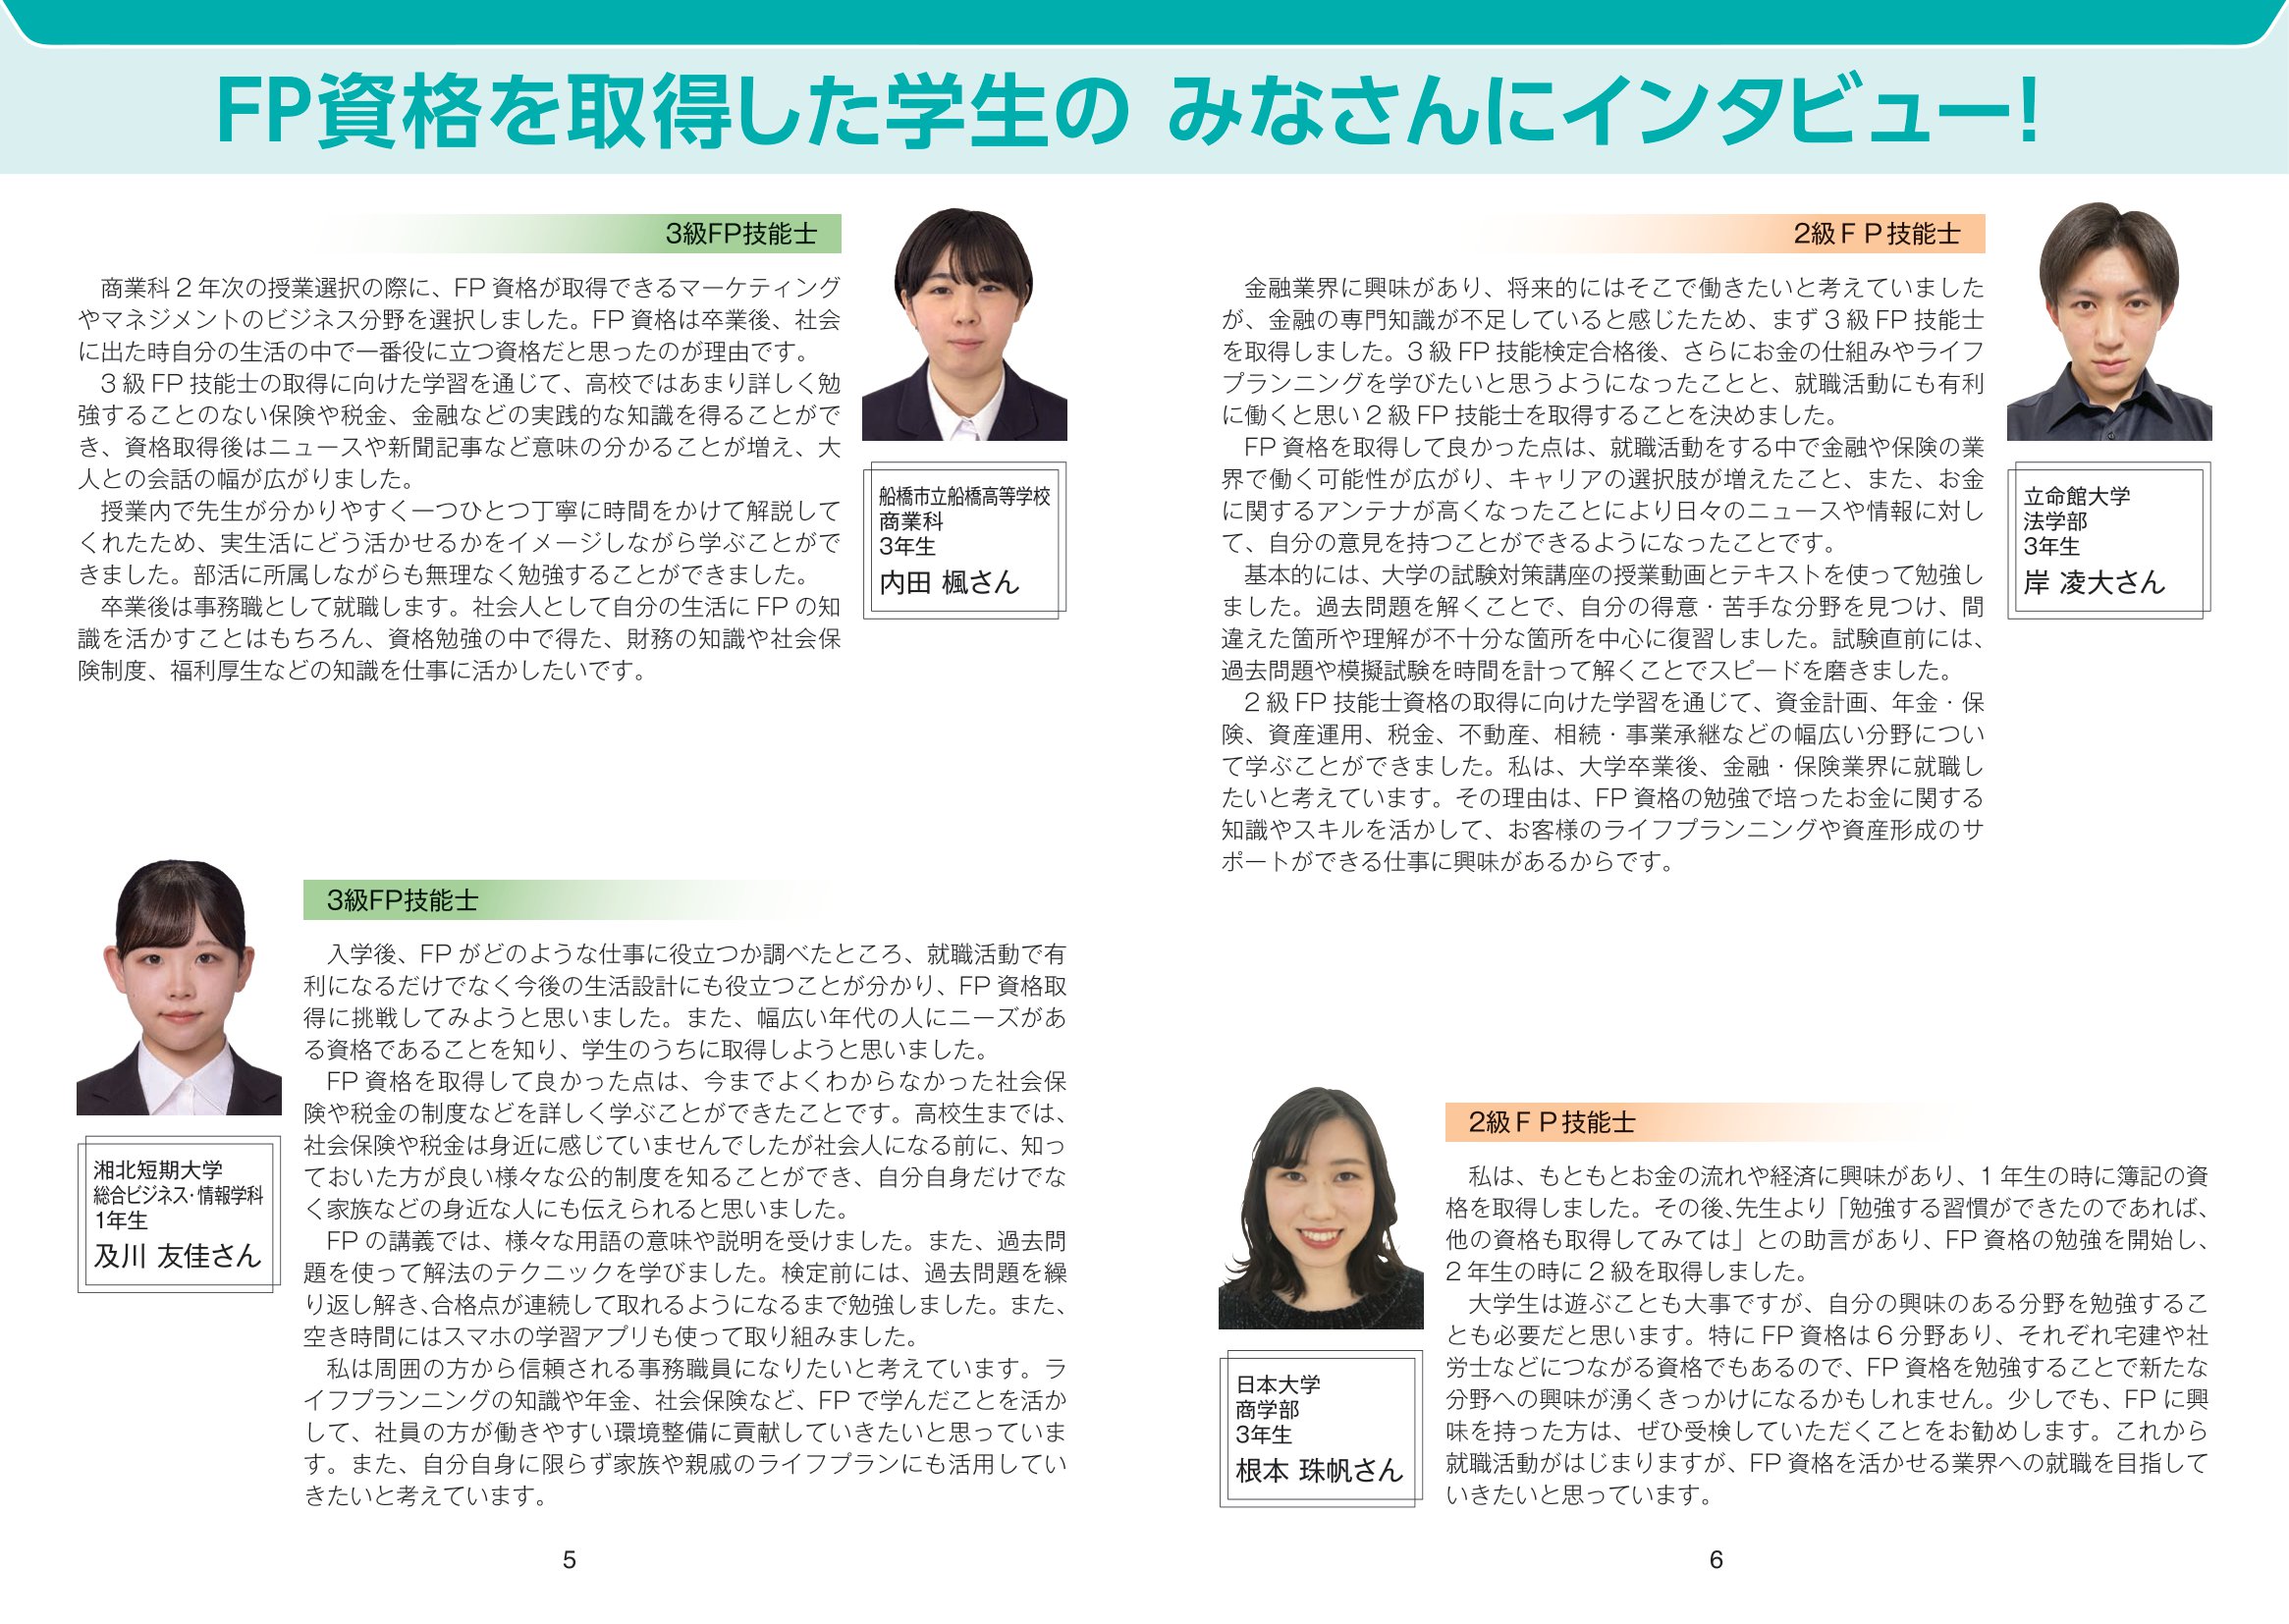 大学生 高校生のためのfp資格ガイドブック 日本fp協会